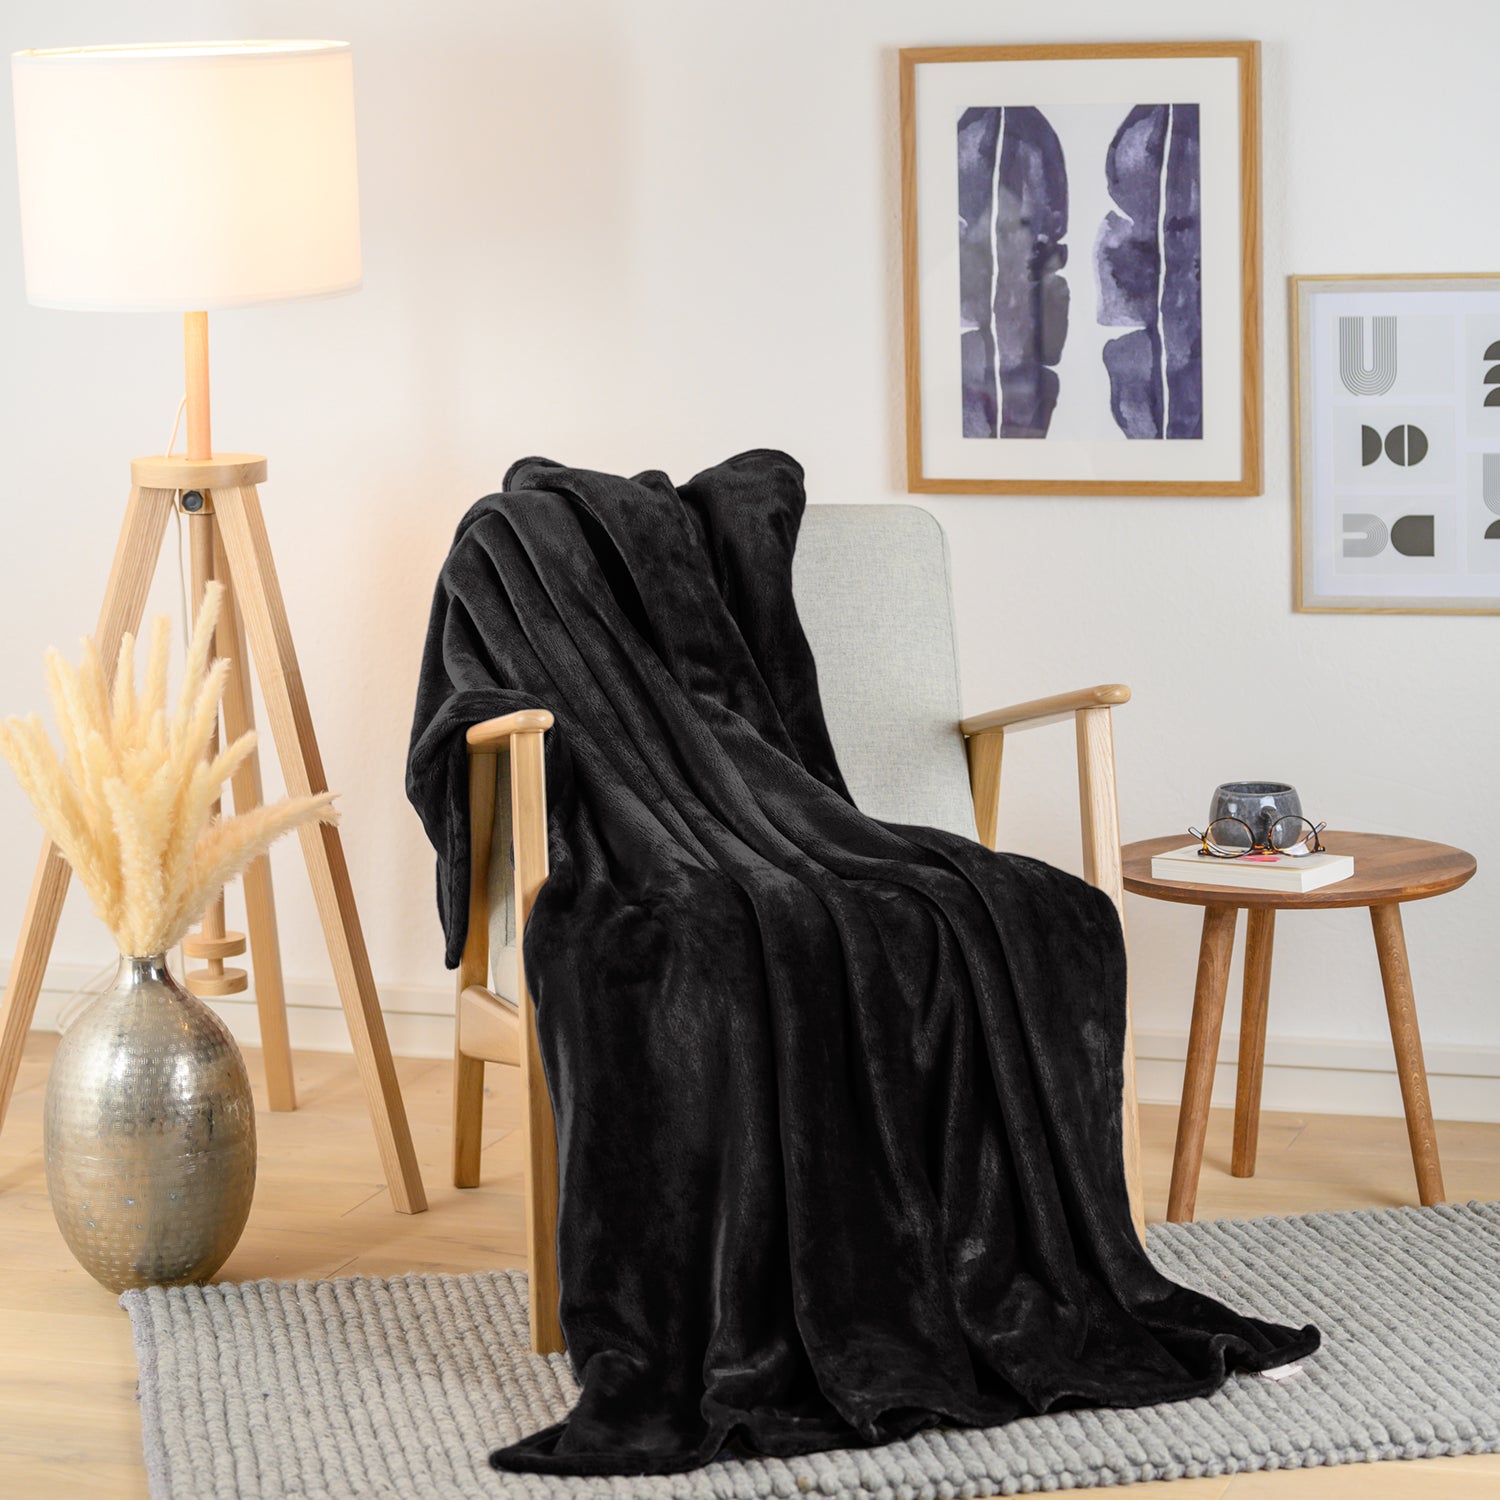 Gemütlich eingerichtetes Wohnzimmer mit einer schwarzen Fleece-Kuscheldecke auf einem hellen Sessel. Neben dem Sessel steht eine Holzlampe und ein kleiner Beistelltisch mit einer Vase und einer Brille darauf.